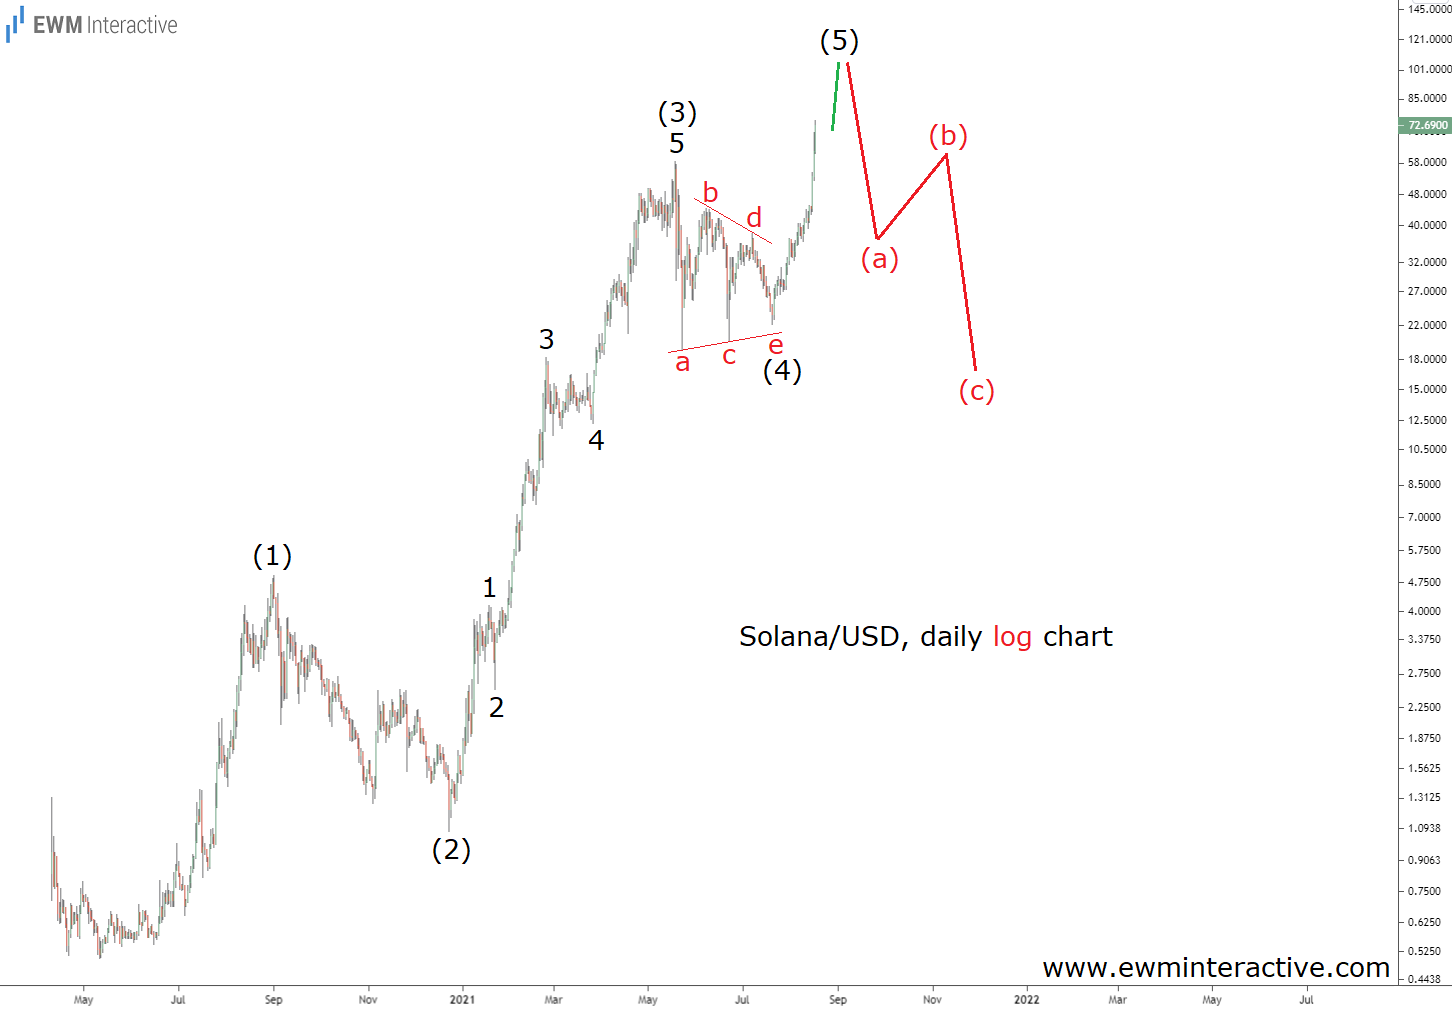 Solana/USD Daily Log Chart